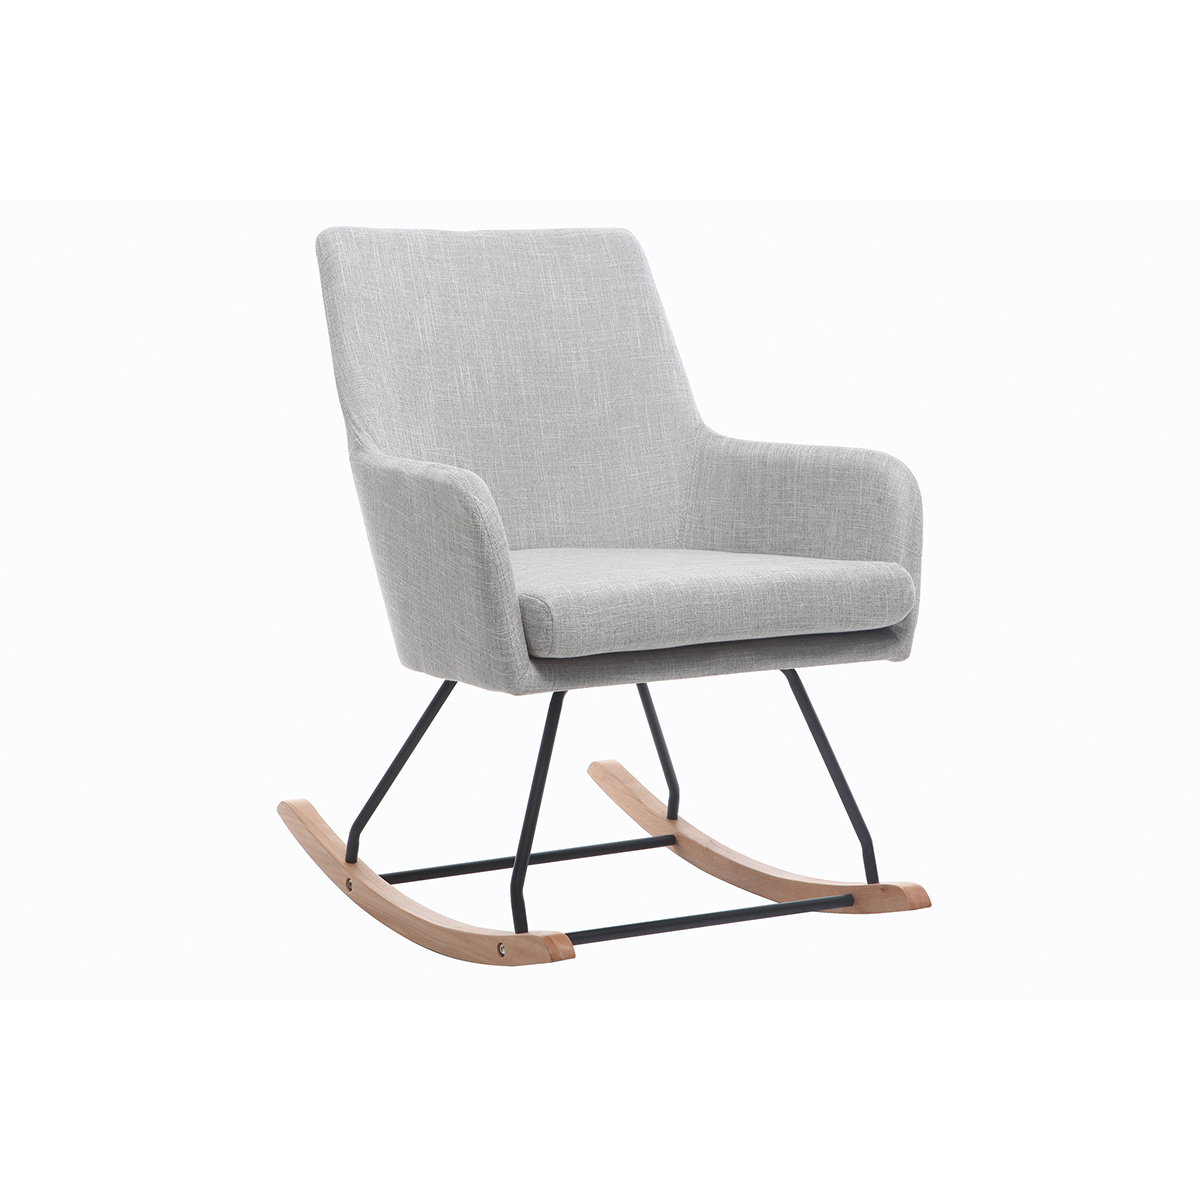 Fauteuil rocking chair design en tissu gris clair SHANA vue1